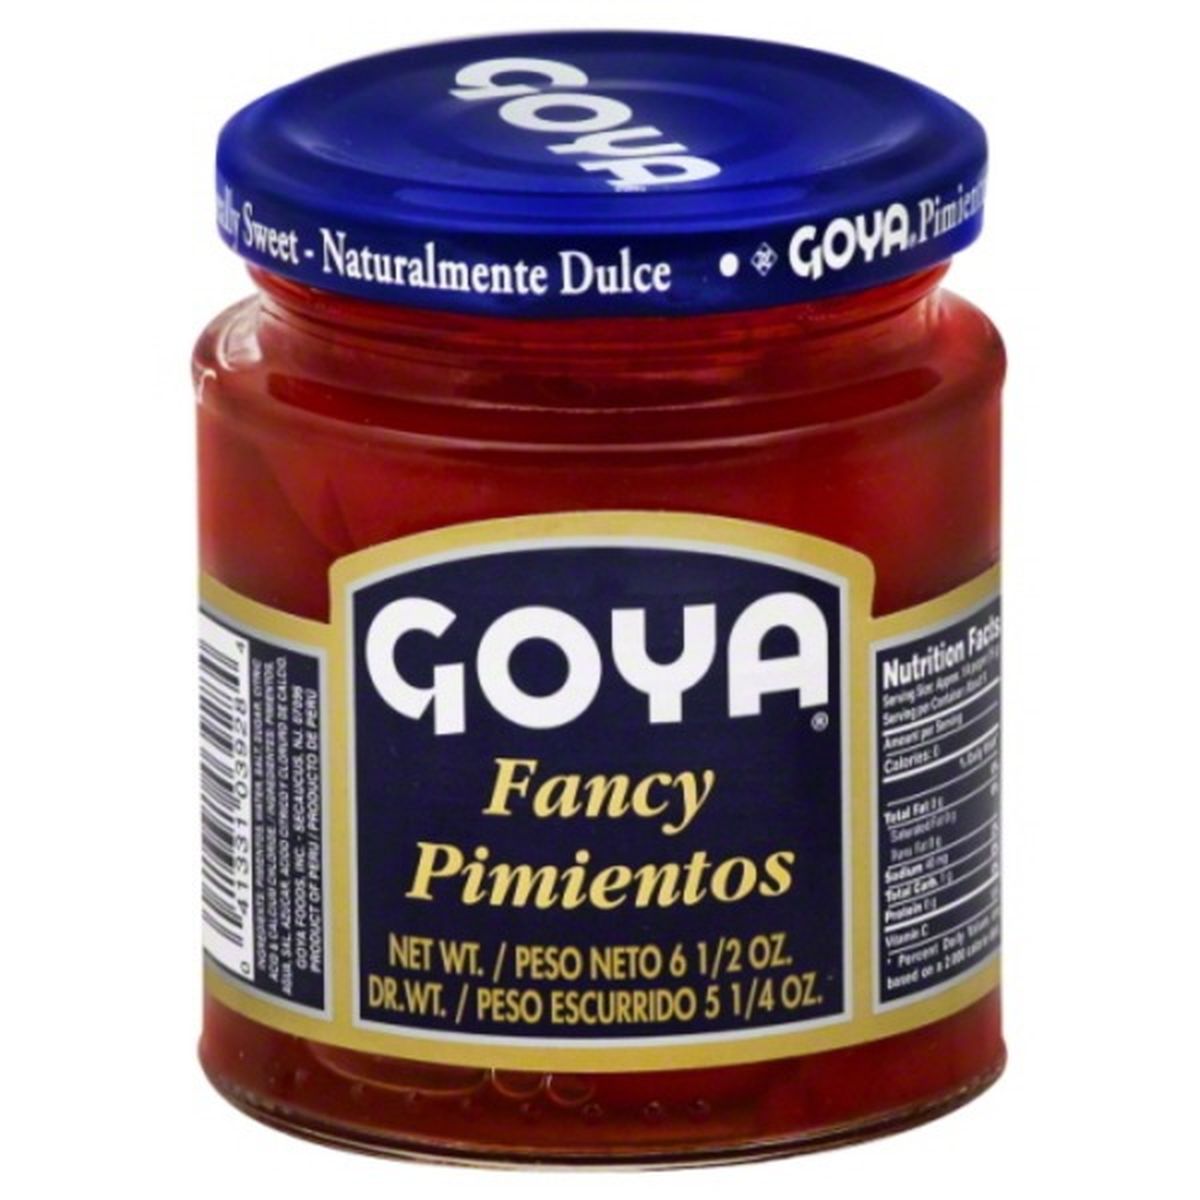 Calories in Goya Pimientos, Fancy